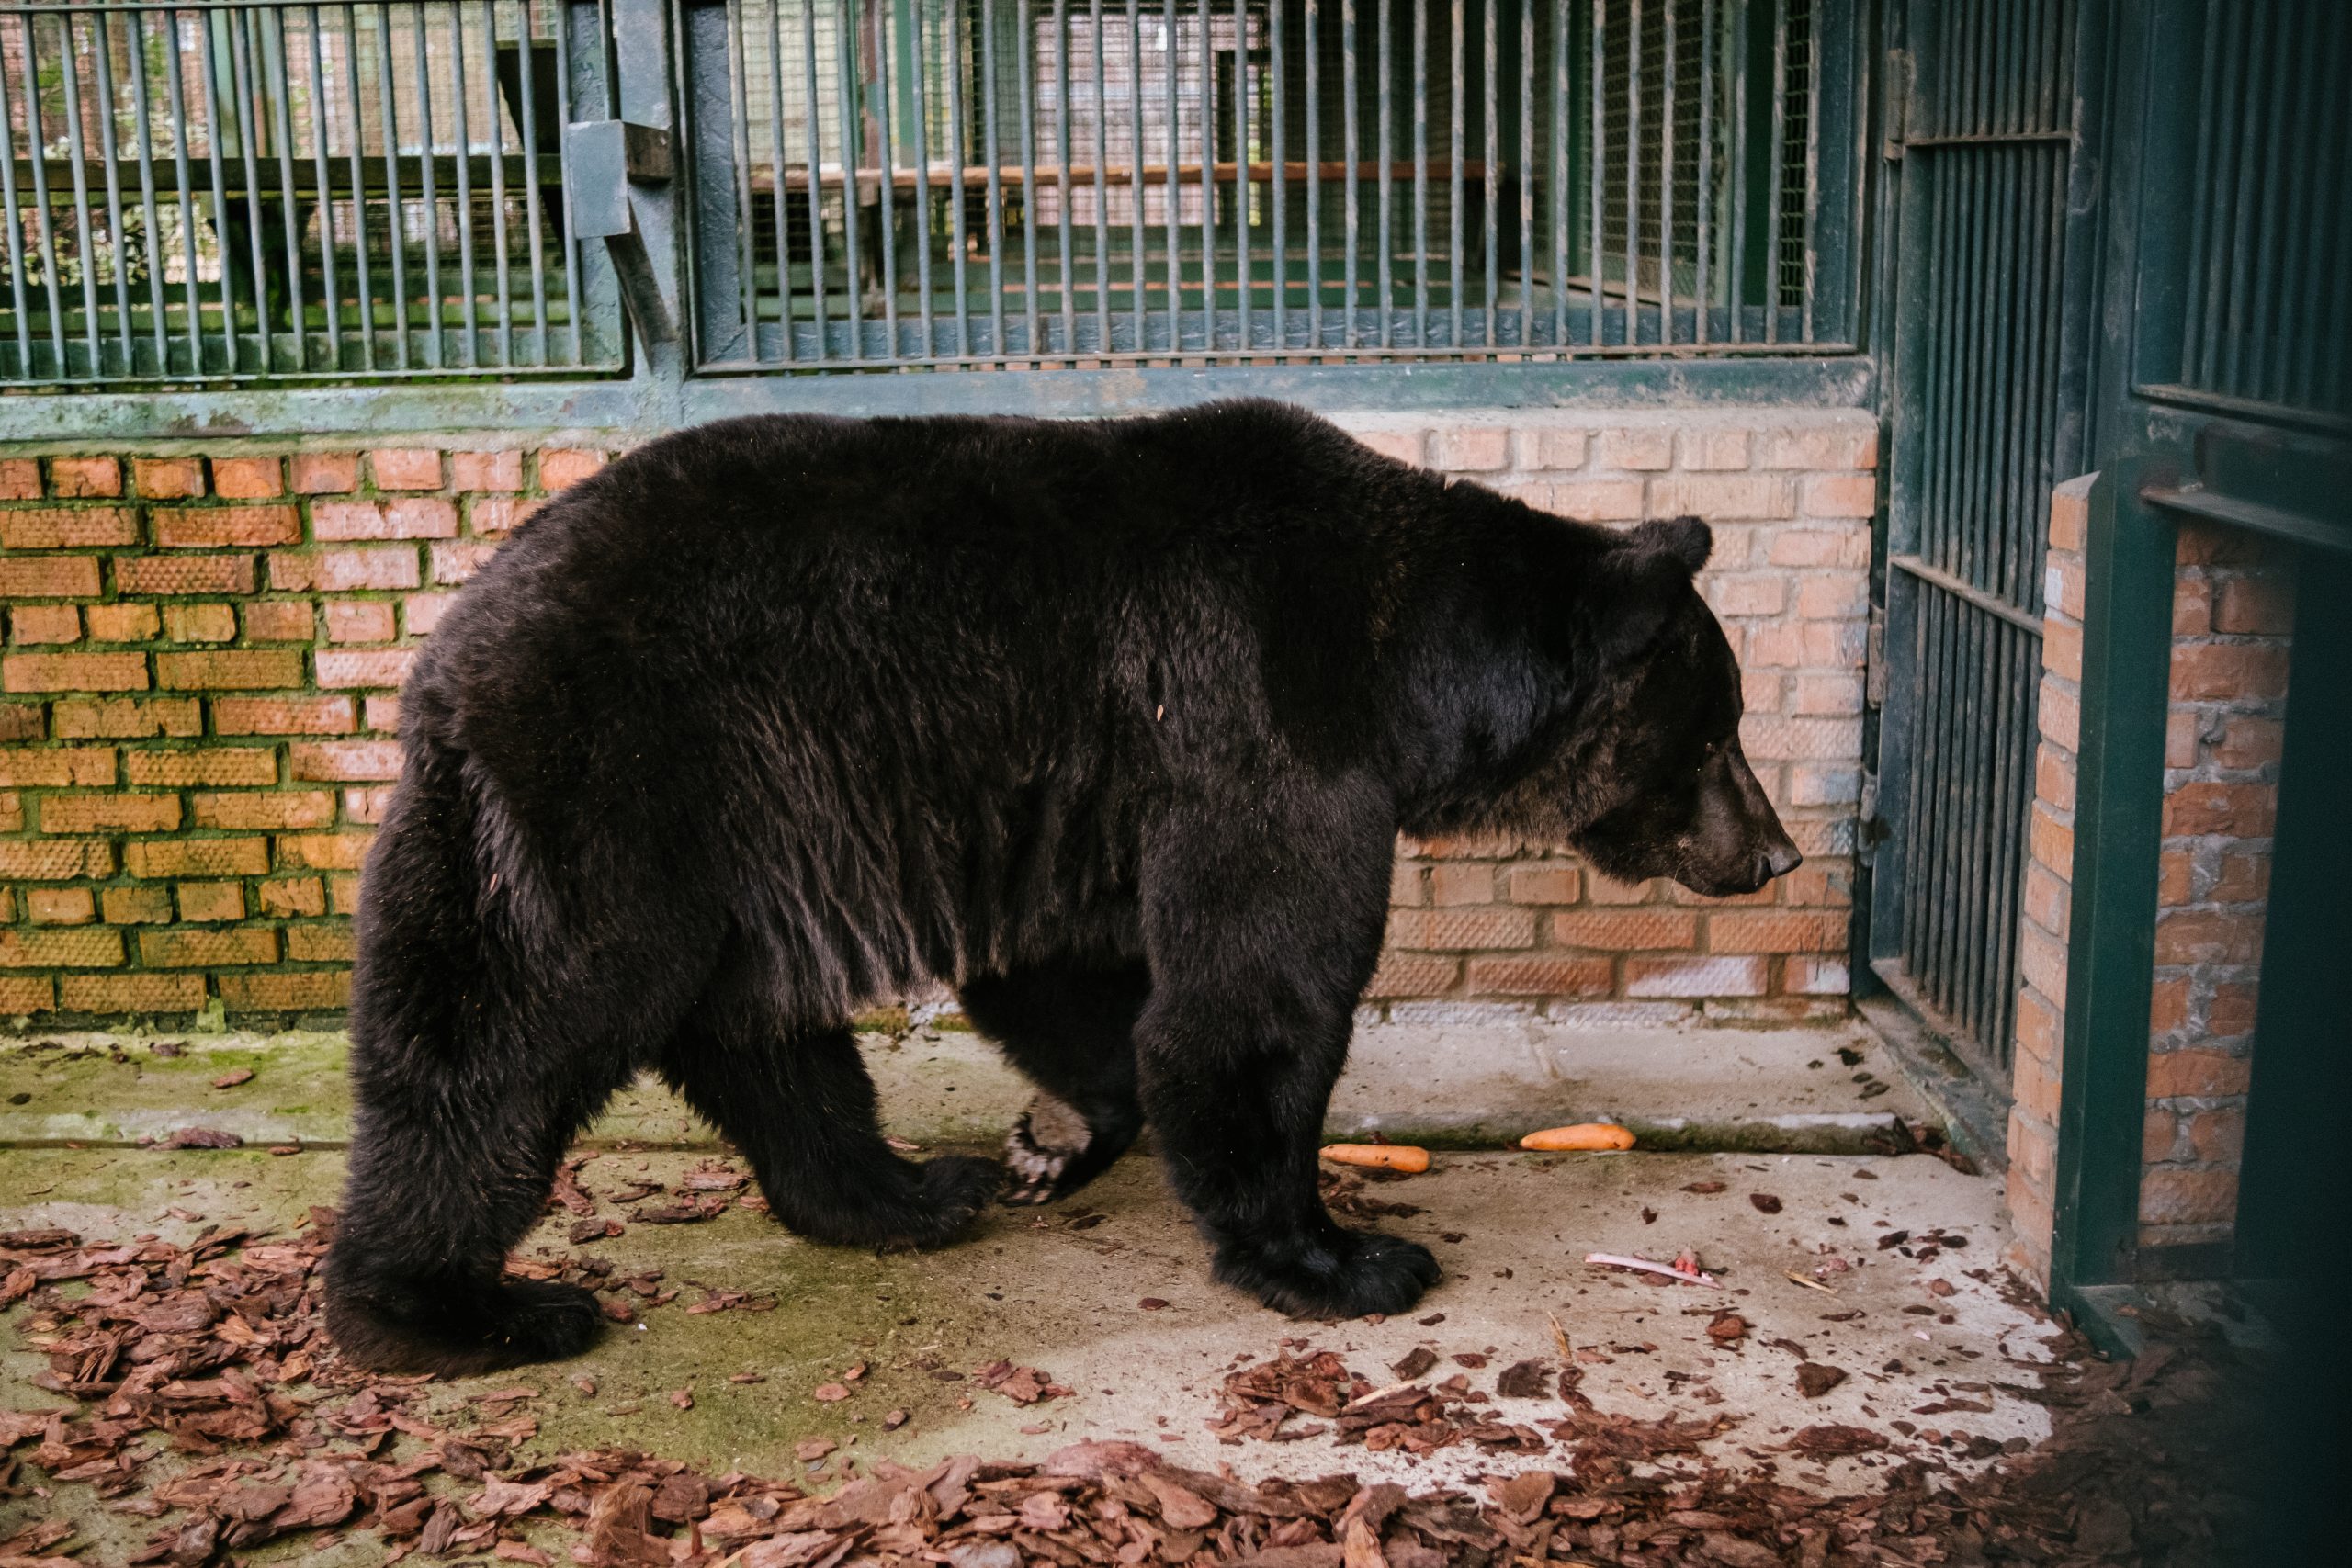 Бурого медведя Гром перевезли в Центр воспроизводства редких видов животных Московского зоопарка. Фото: пресс-служба Московского зоопарка